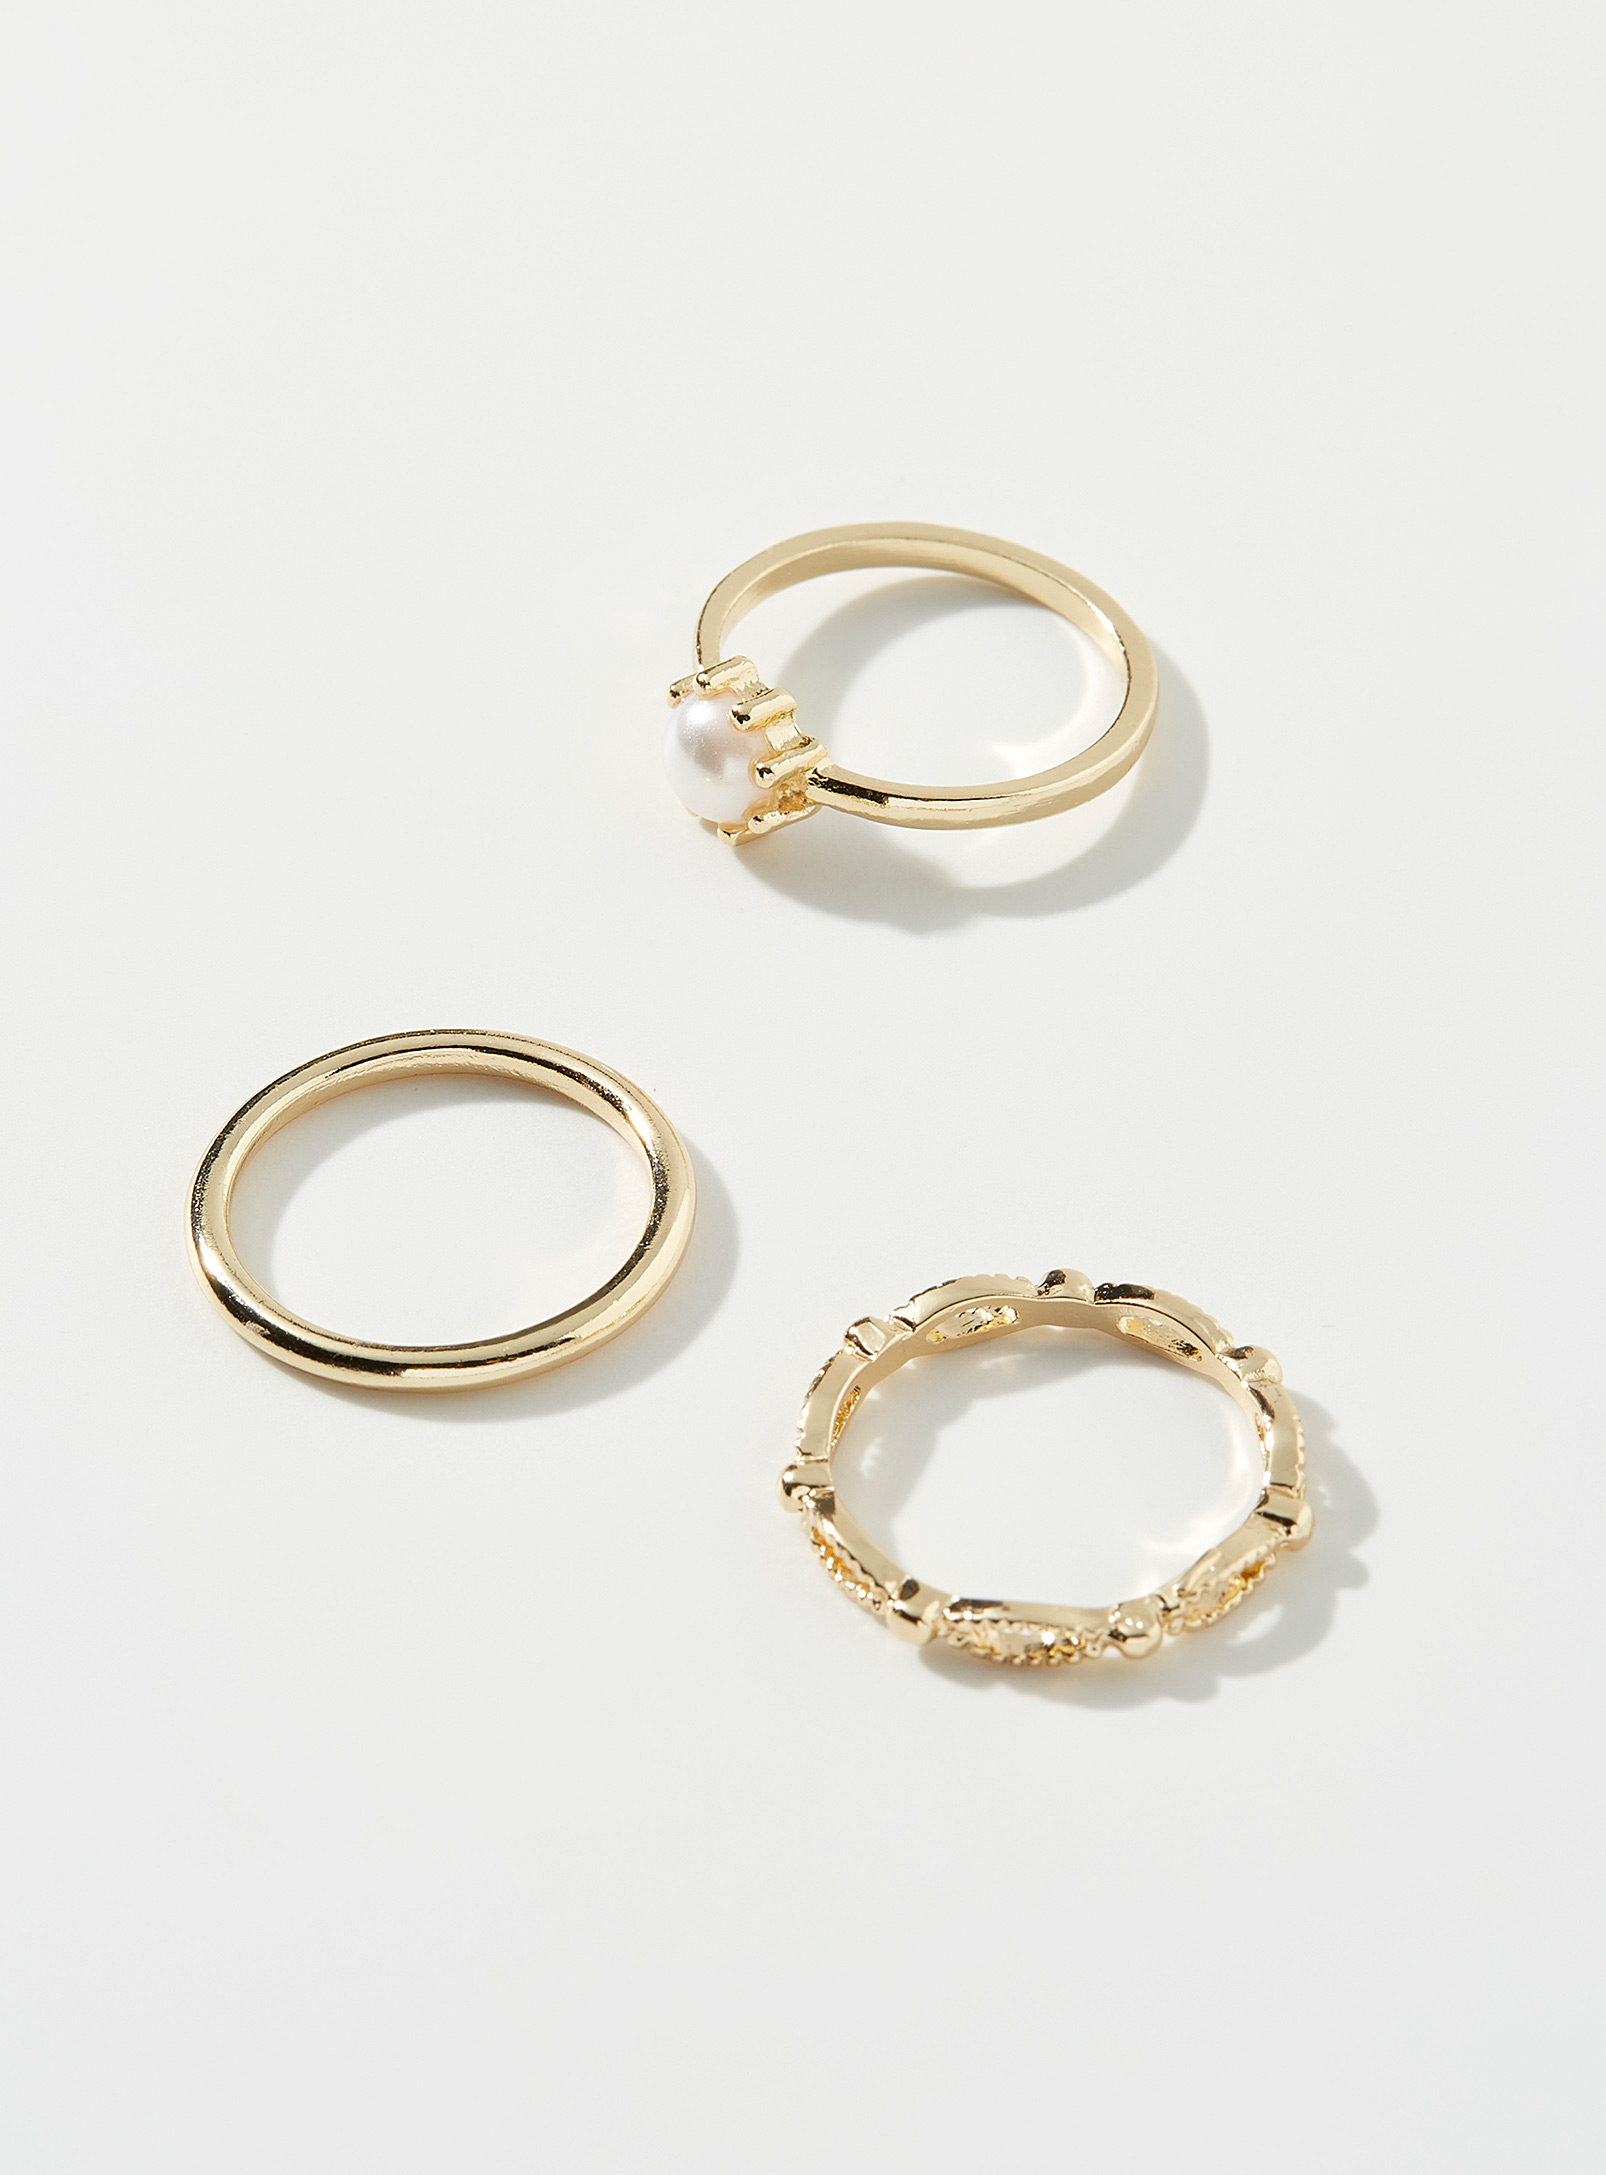 Simons - Women's Vintage rings Set of 3